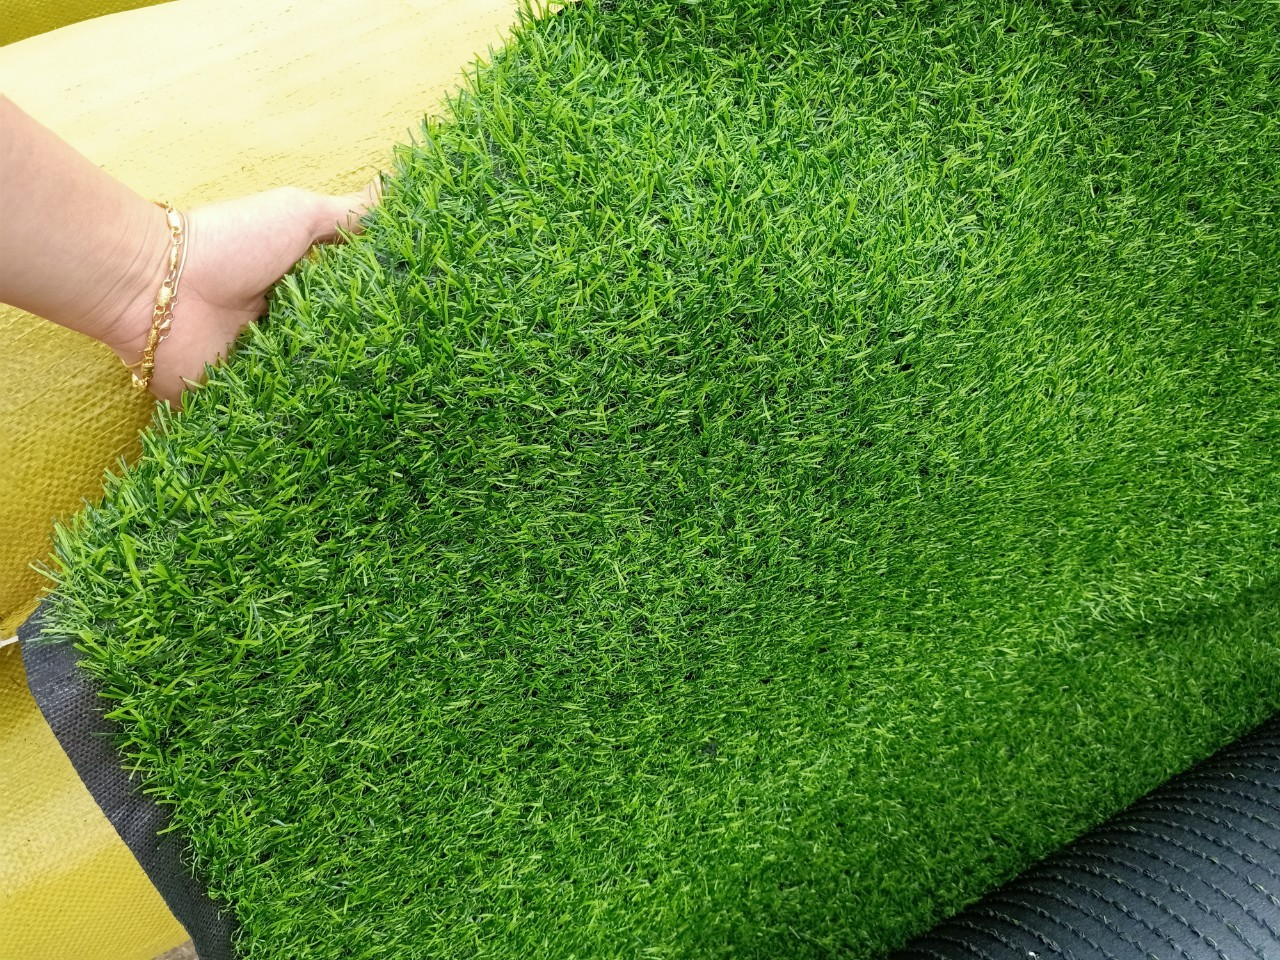 Thảm cỏ nhân tạo 2cm là loại có chiều cao ngọn cỏ là 2cm với đế được làm từ một lớp cao su